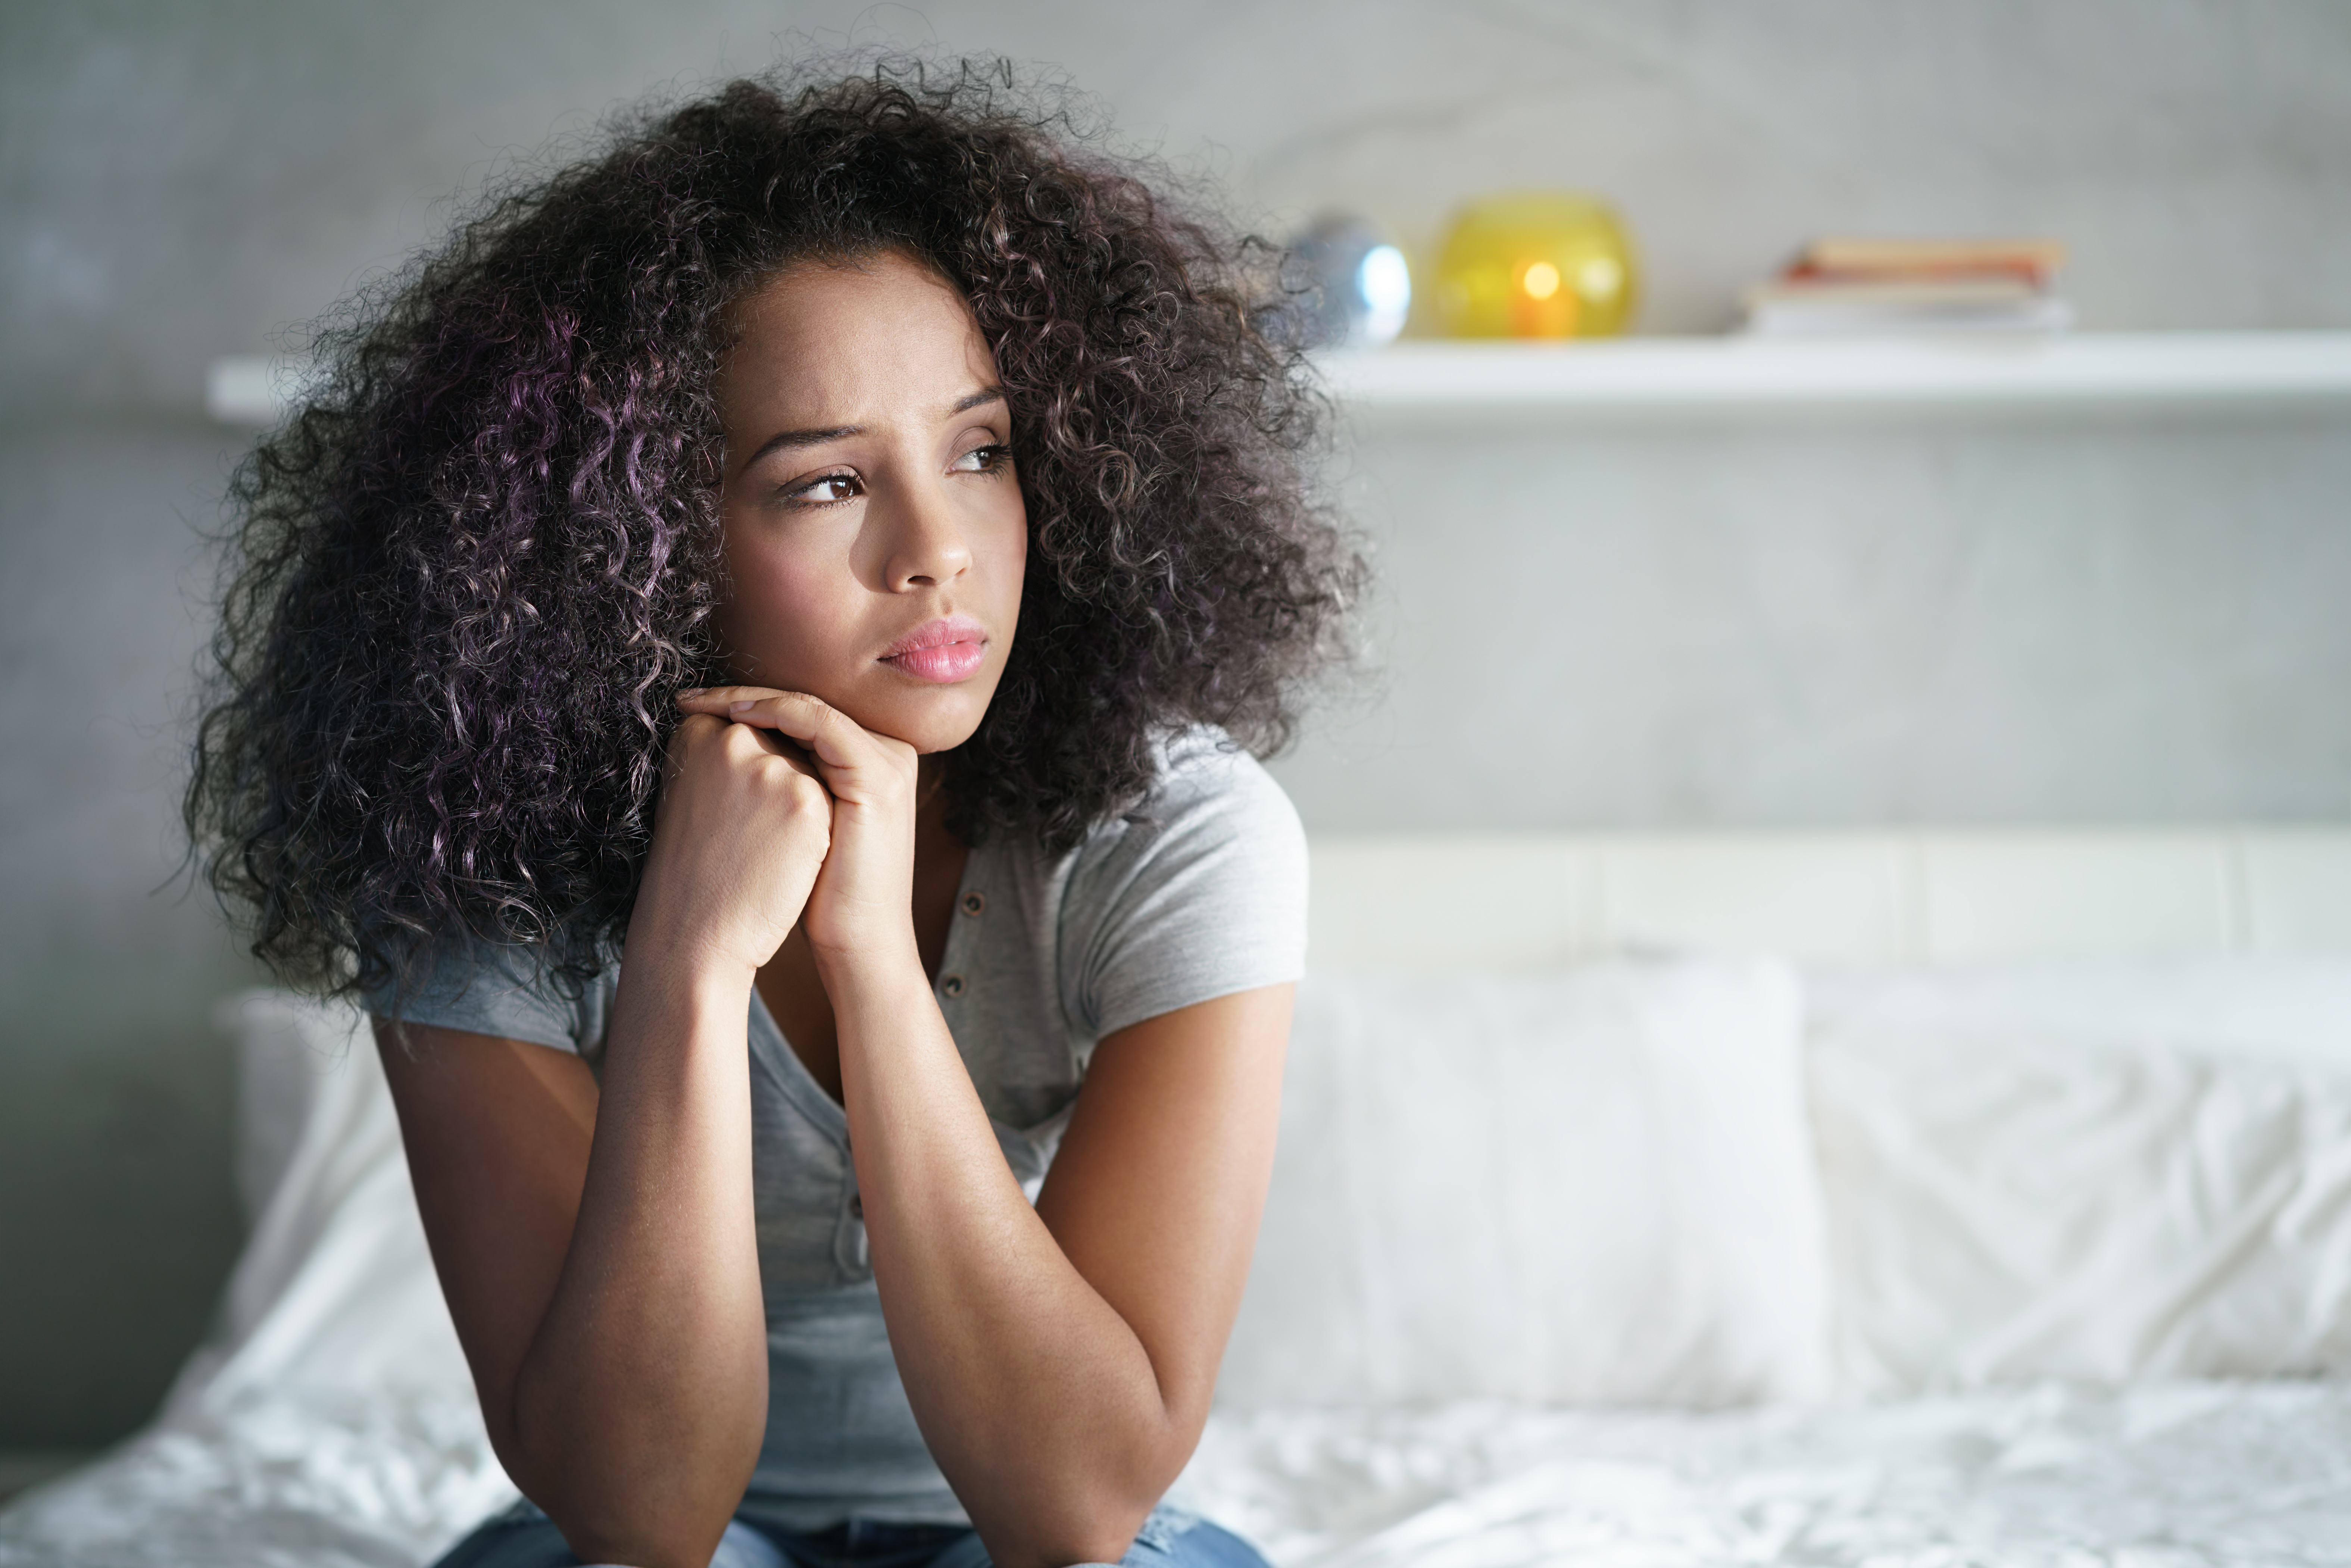 Une femme noire perturbée assise sur un lit le regard ailleurs | Source : Shutterstock